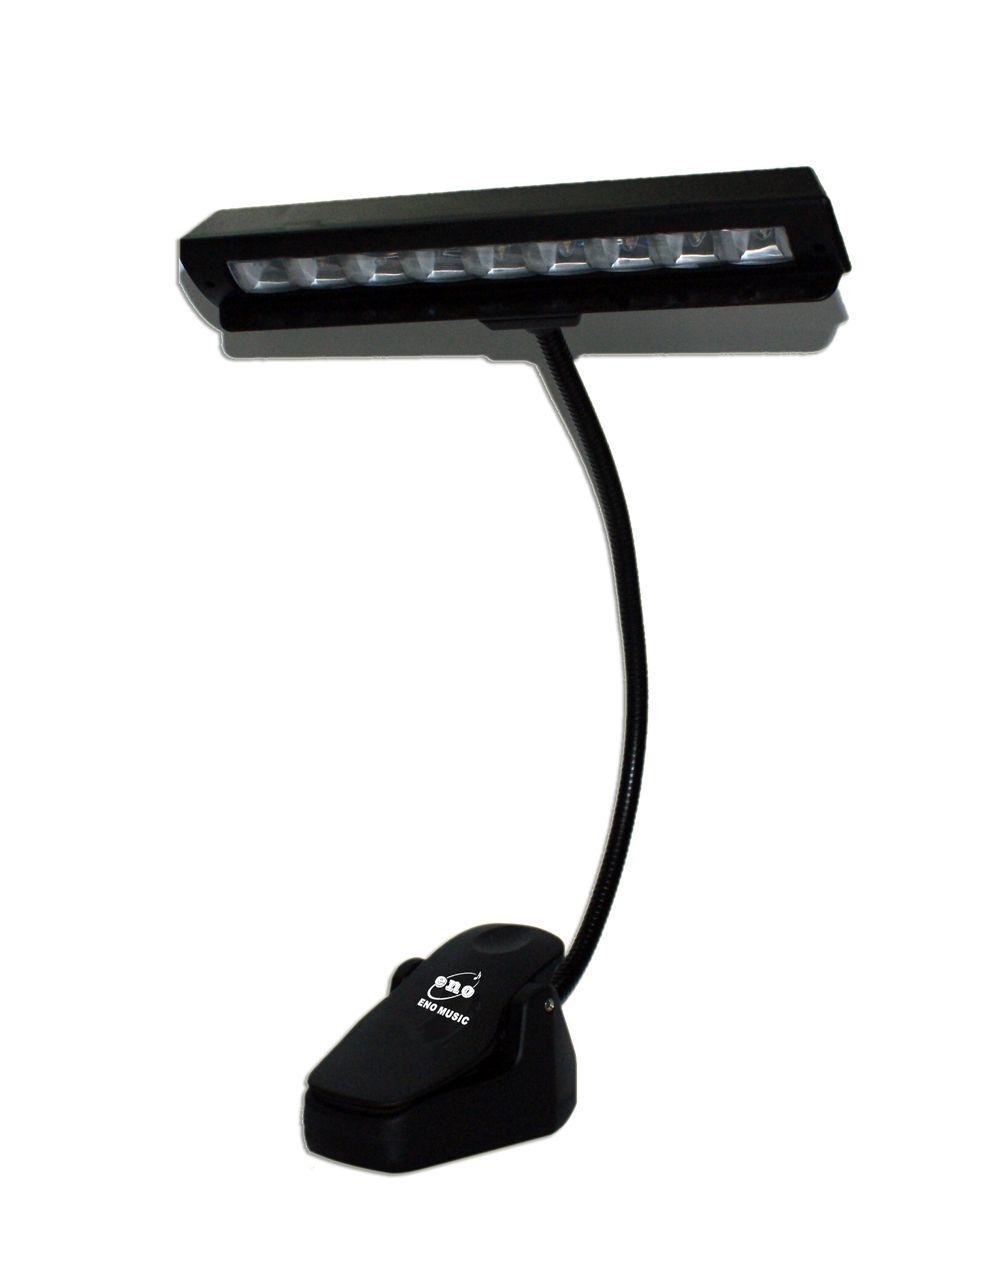 ENO EL-03 LAMPADA DA LEGGIO 9 LED A BATTERIE E CAVO USB CLAMP A PINZA COLORE NERO 0